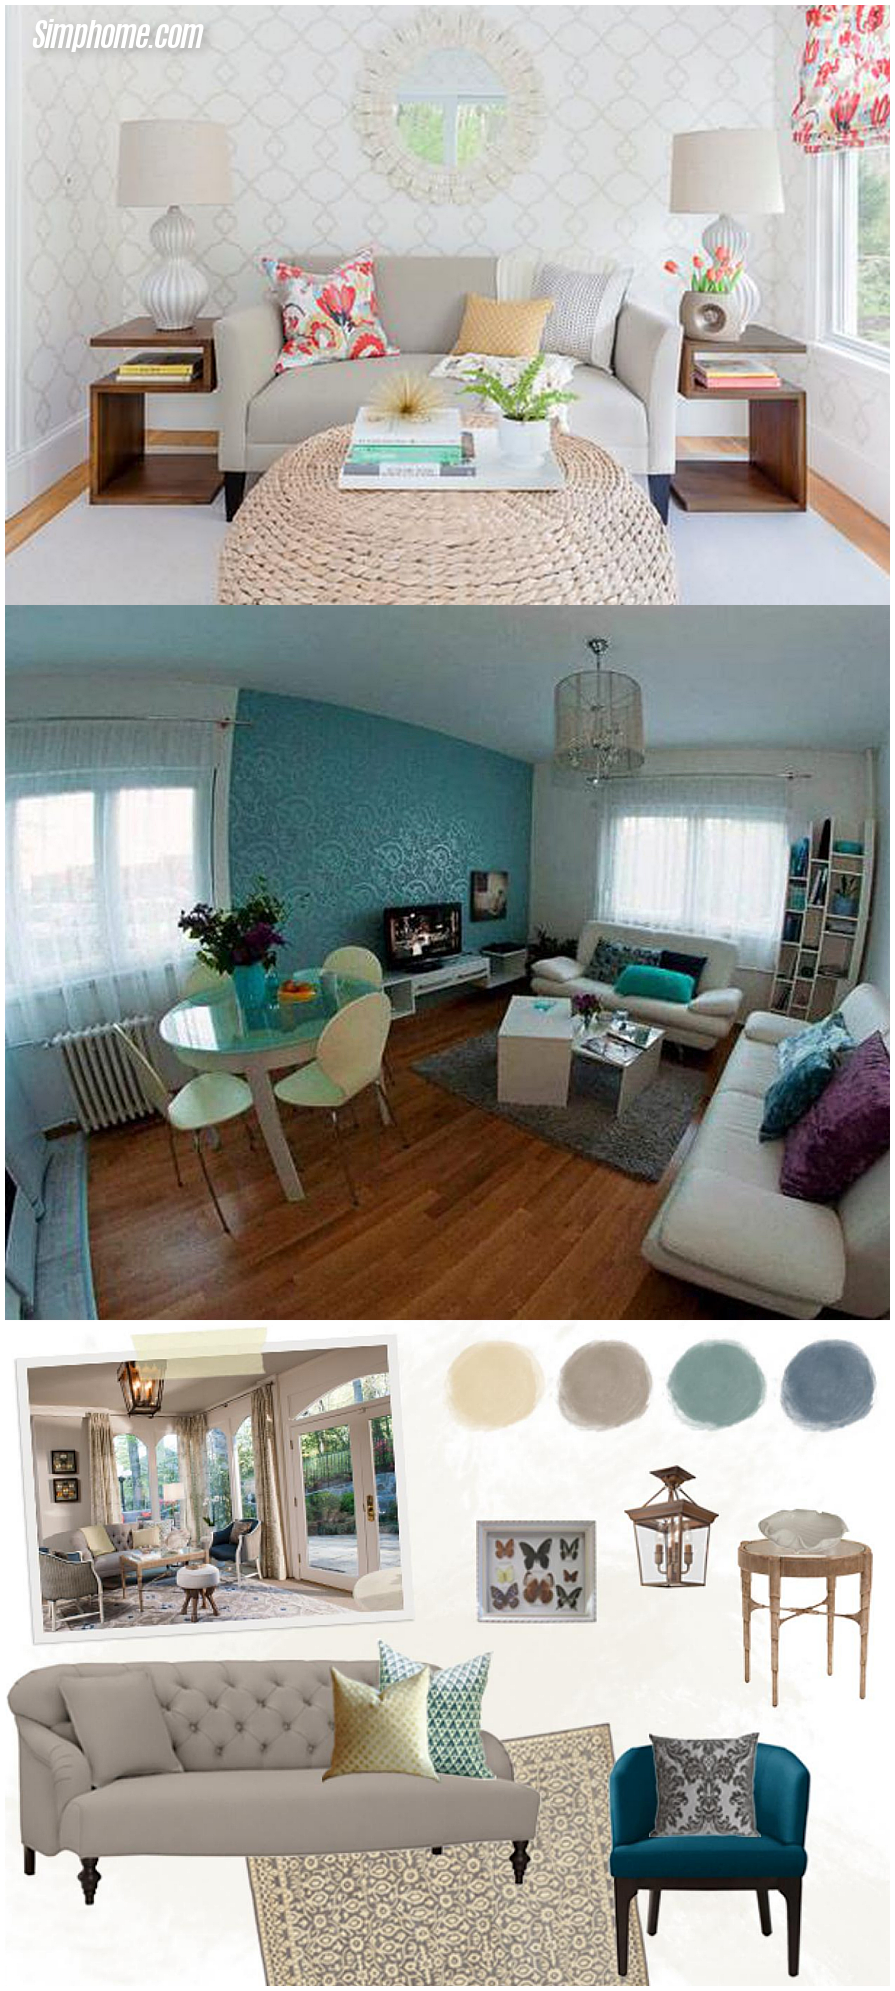 Small room design living room arrangements ideas and design via Simphome.com